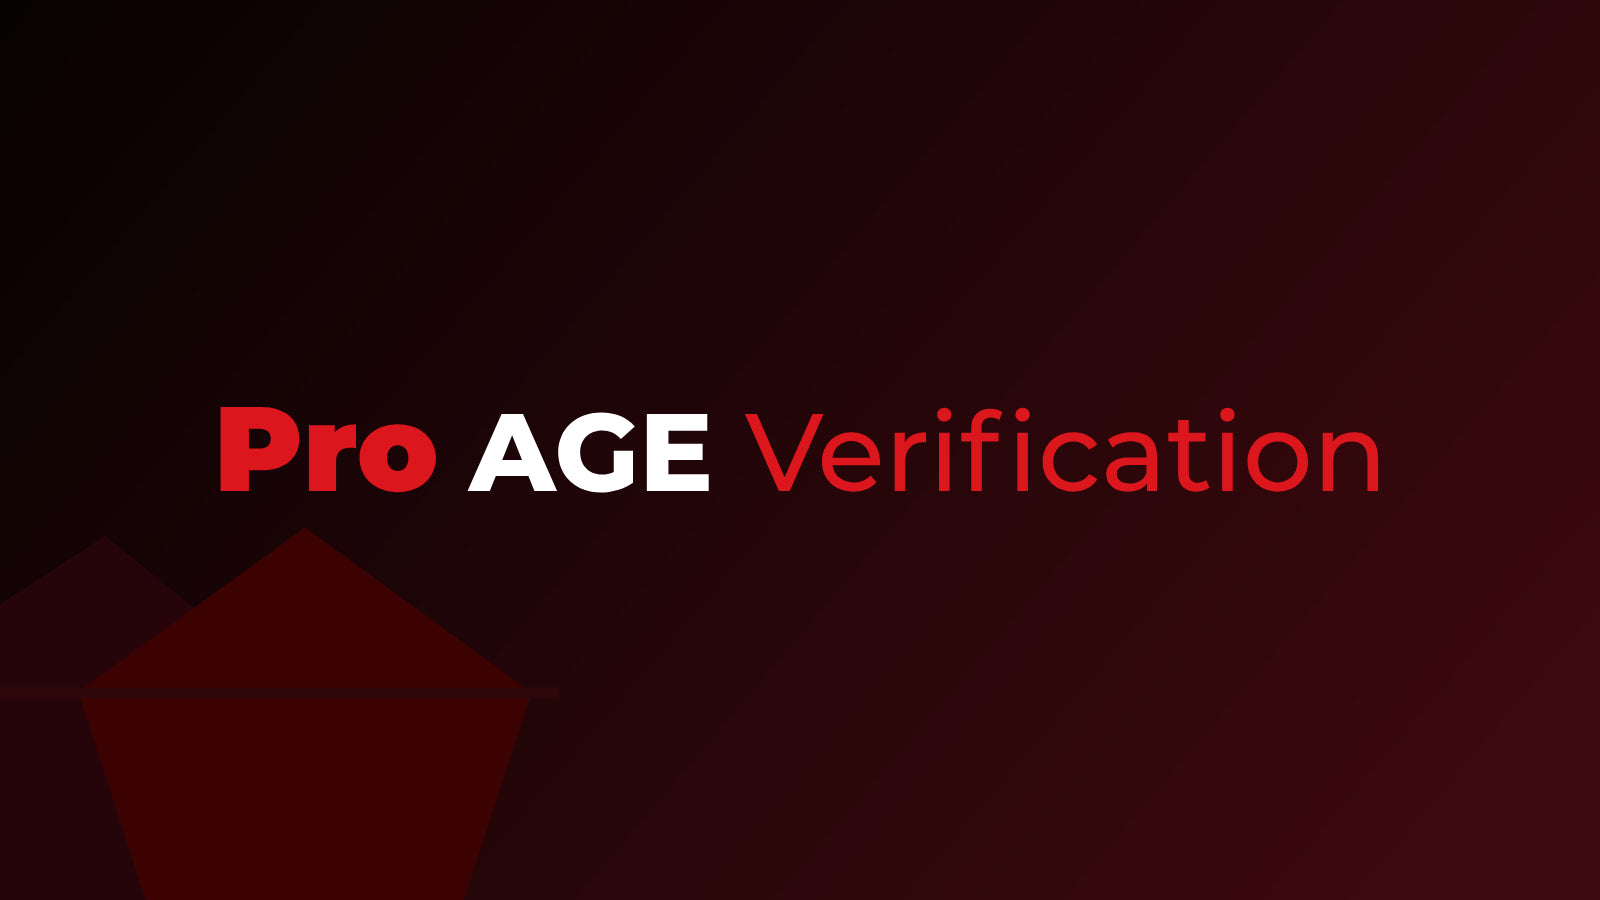 Pro Age Verification Screenshot